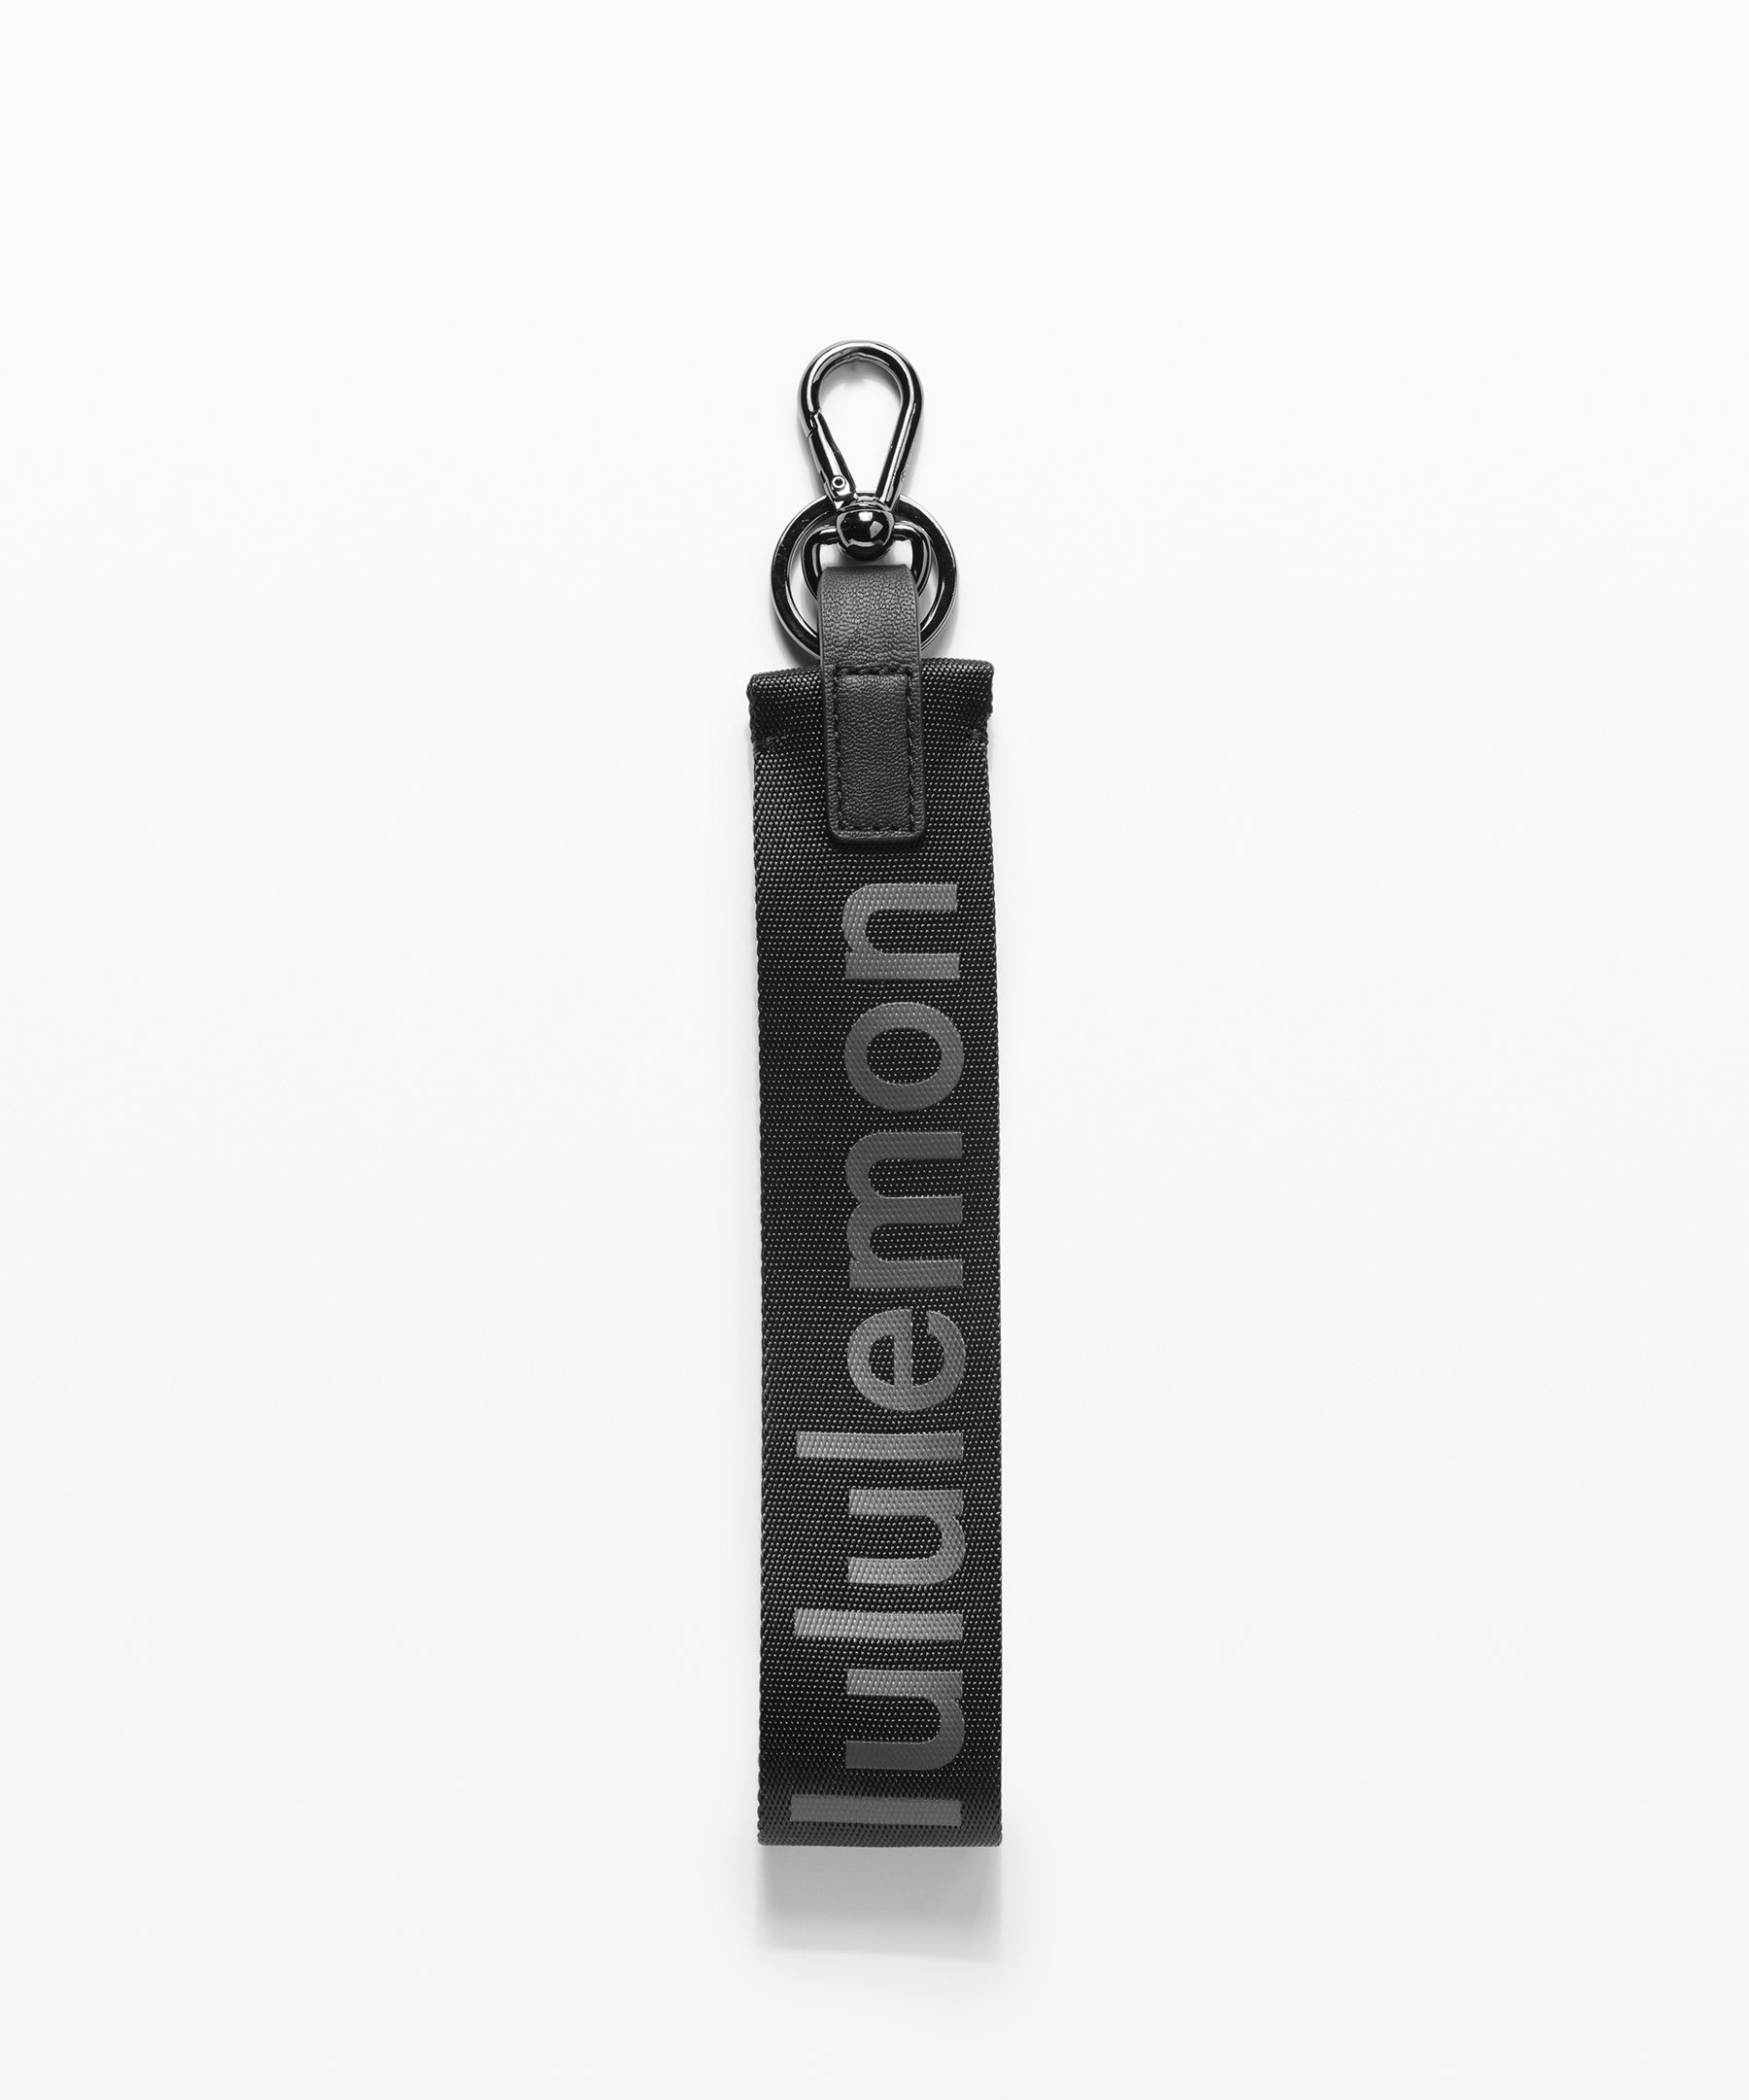 Lululemon Never Lost Keychain In Black/super Dark